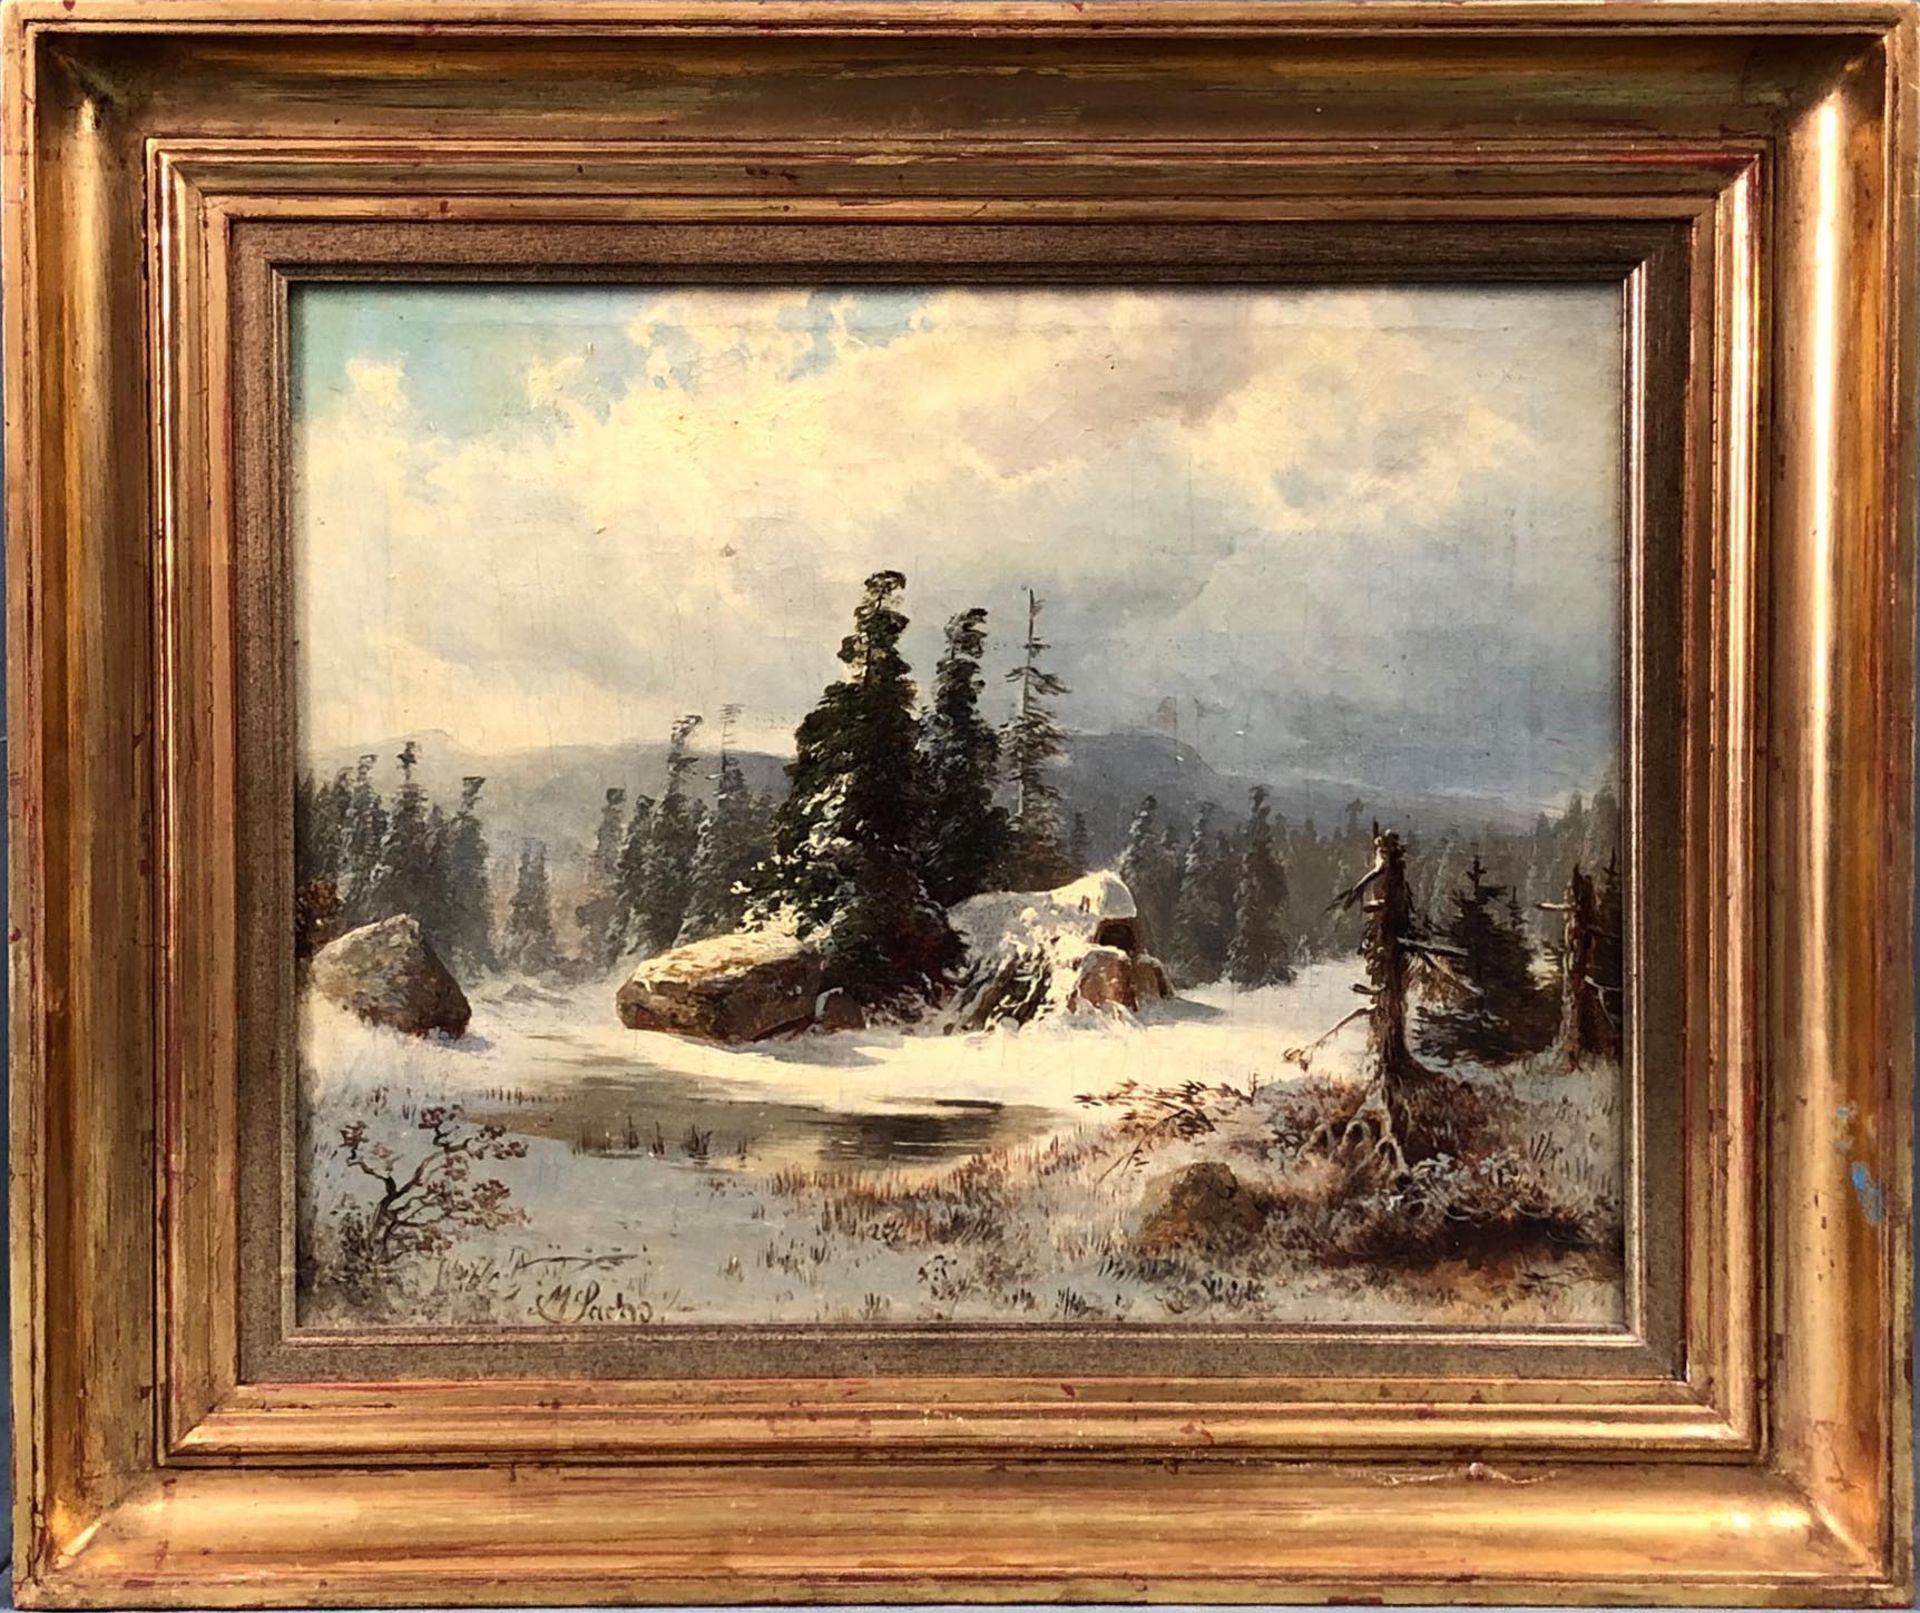 Michael SACHS (1836 - 1893). Hünengrab im Schnee.28,5 cm x 34,5 cm. Gemälde. Öl auf Leinwand. - Bild 2 aus 8